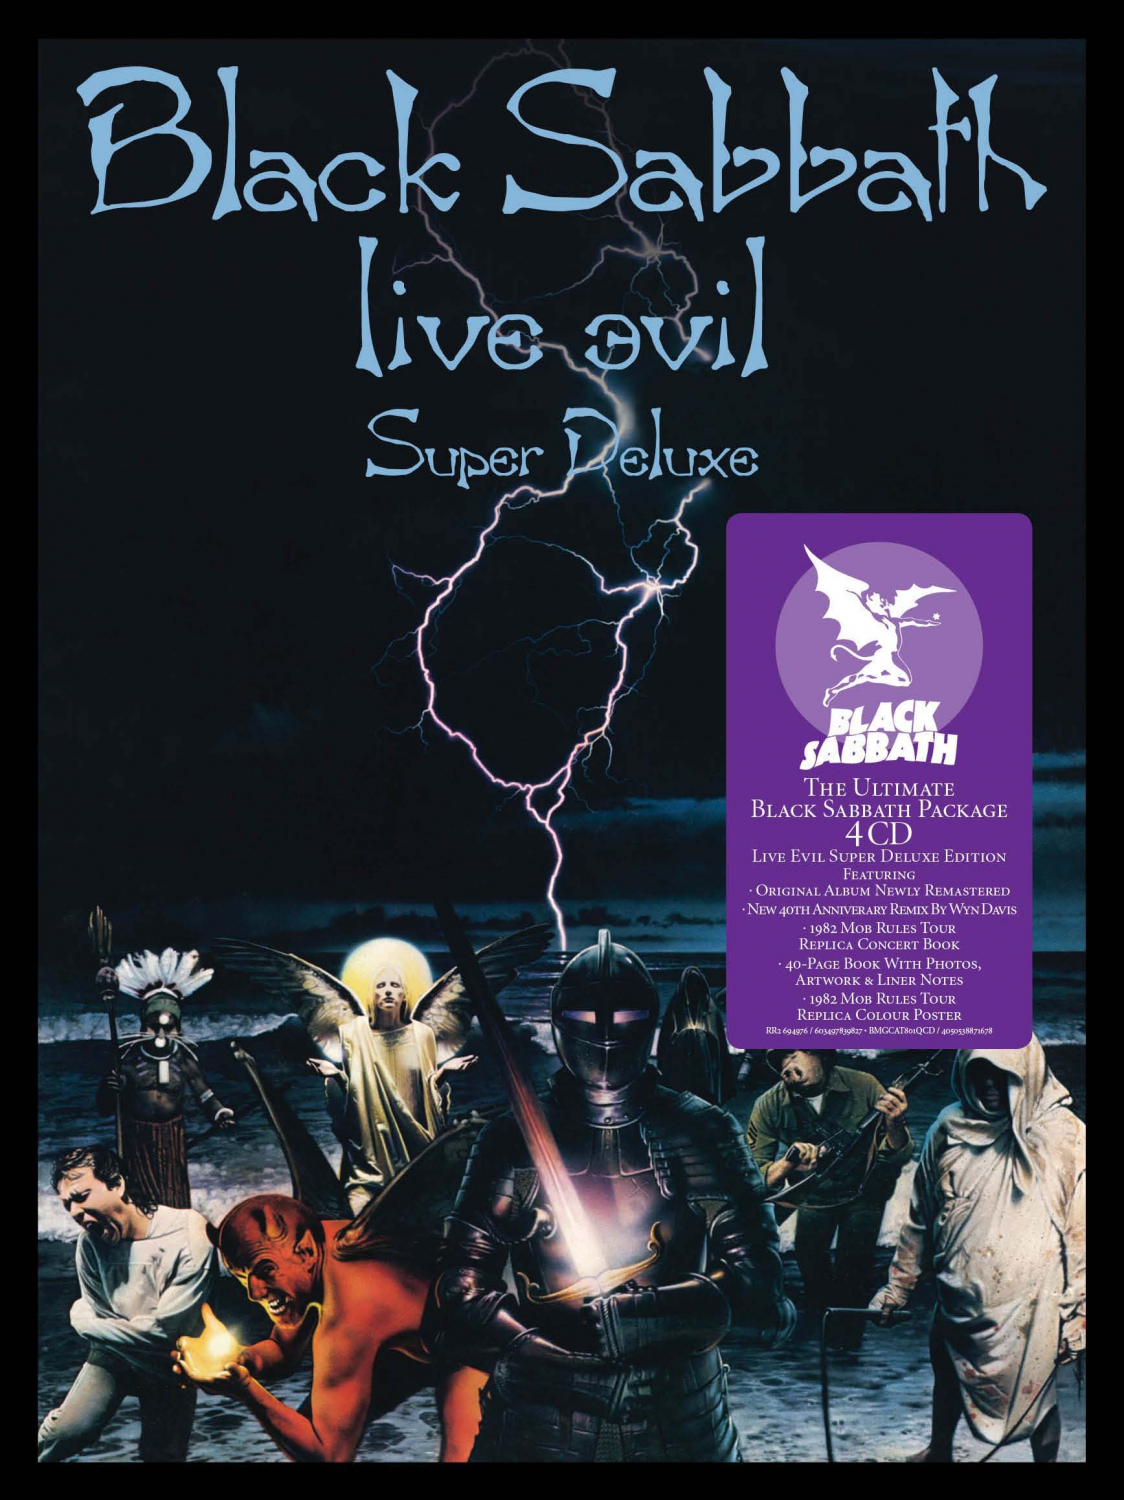 DVD/Blu-ray-Review: Black Sabbath - Live Evil (40th Anniversary Super Deluxe Edition)